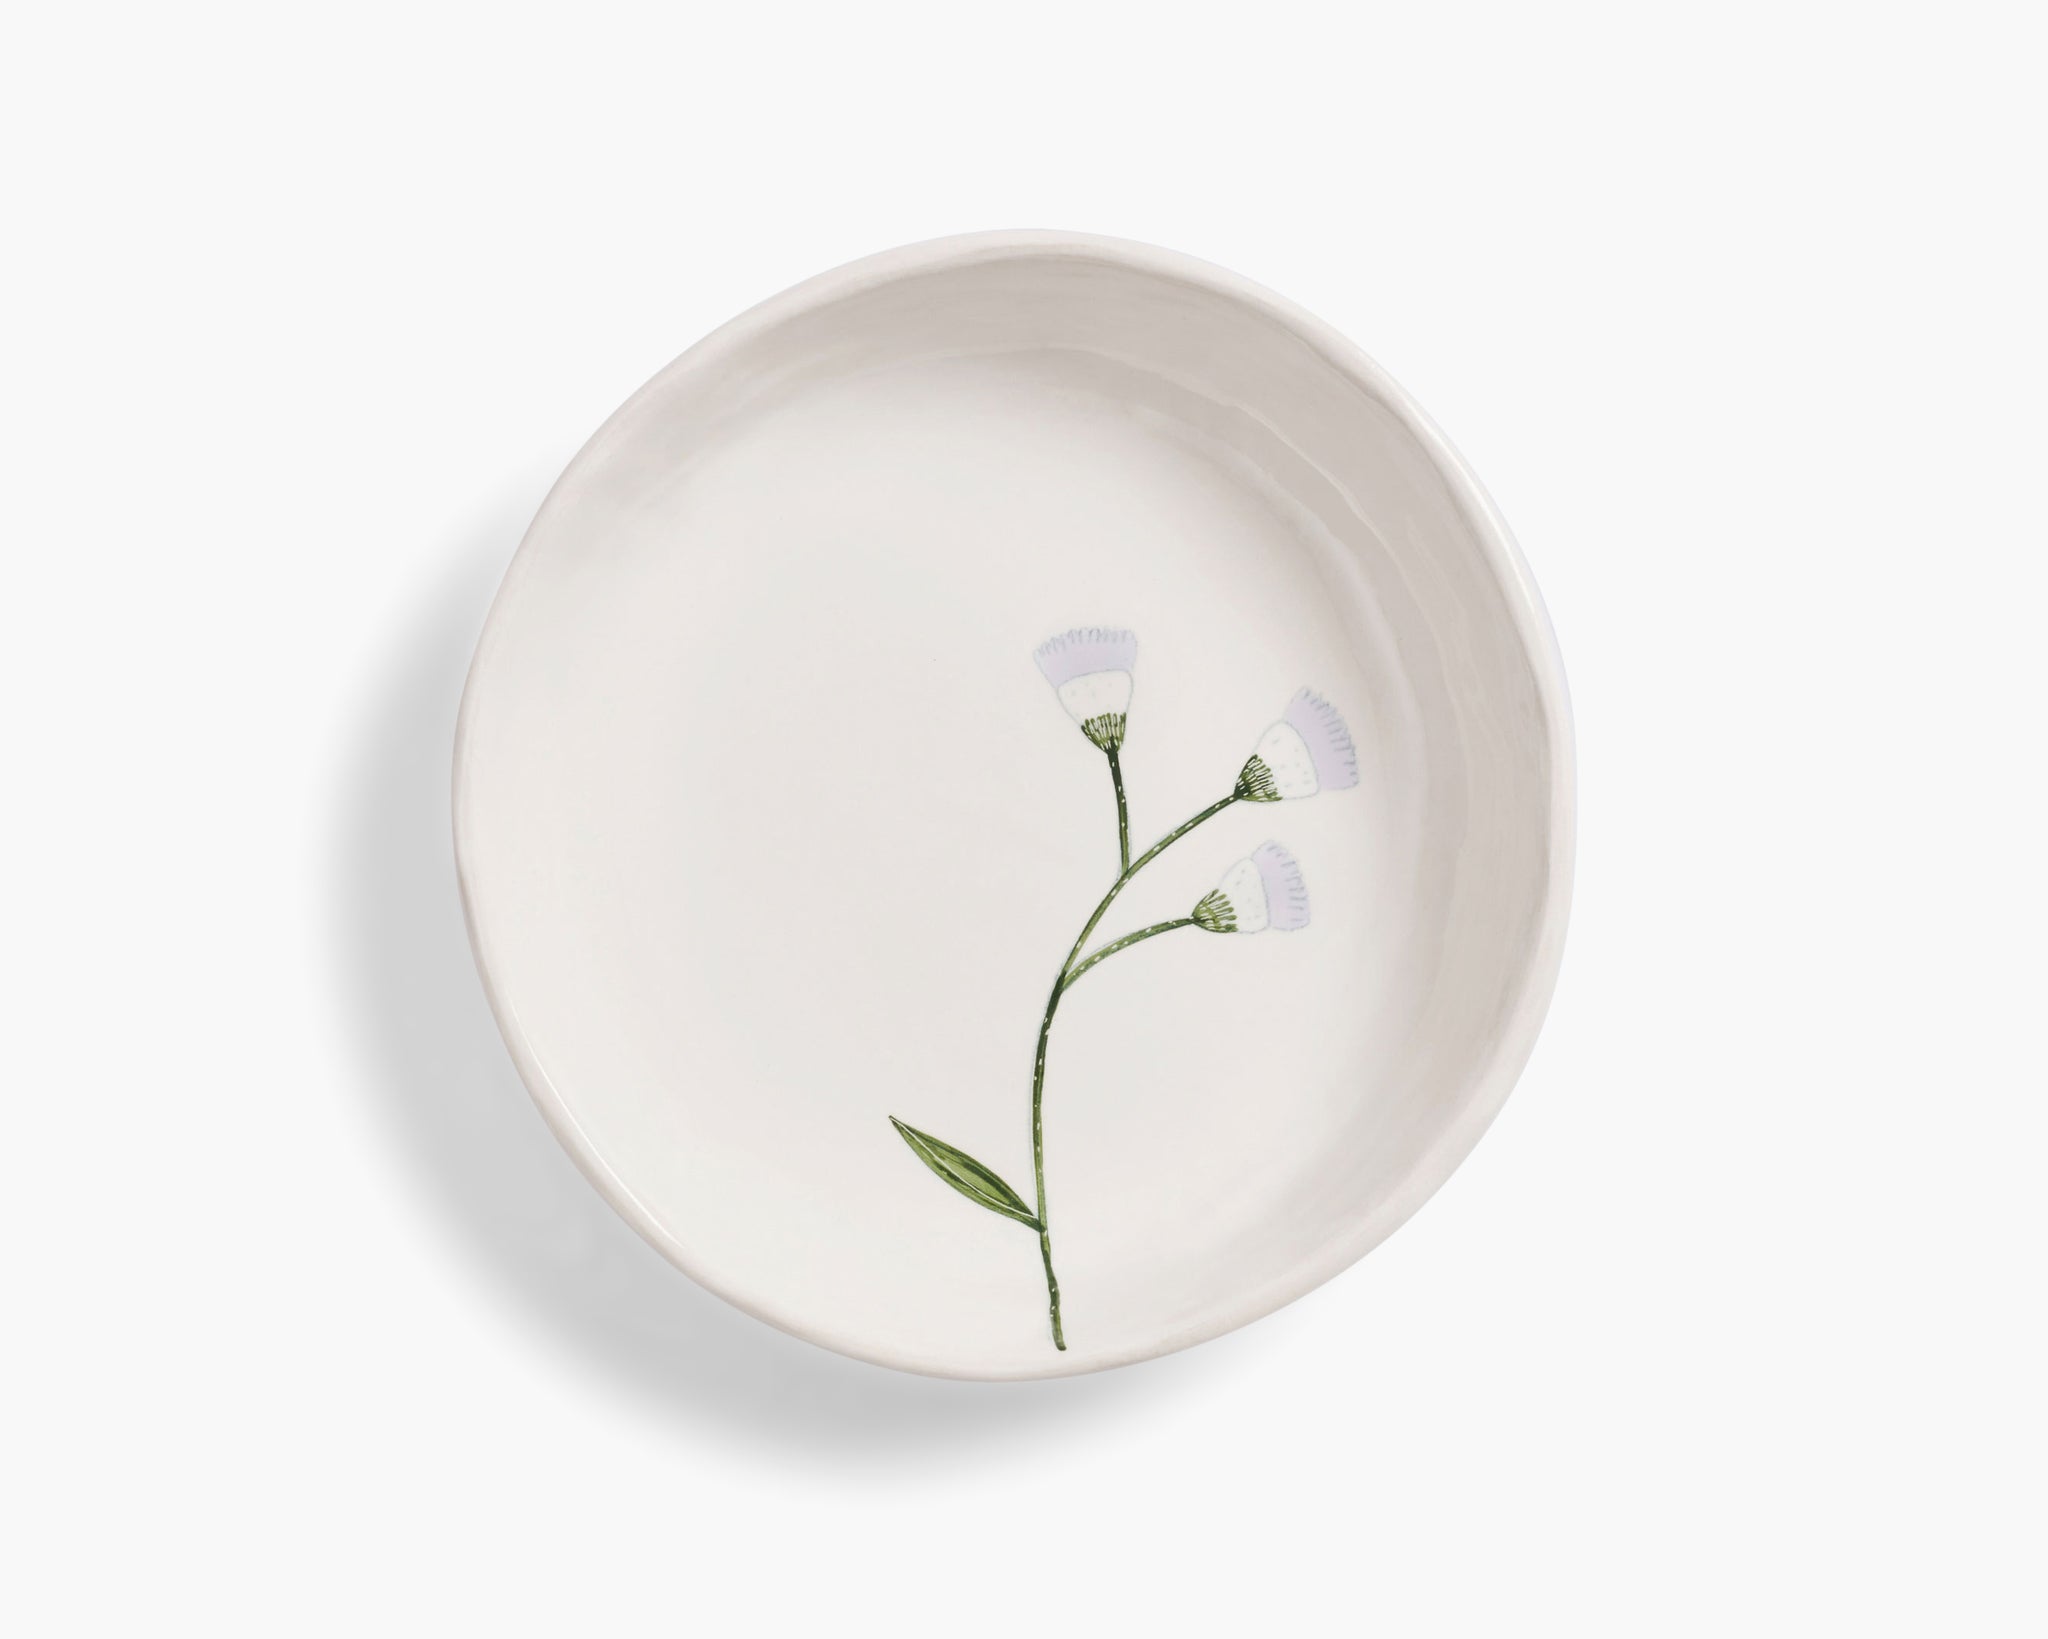 Gemma Orkin 'Wild Flowers' Serving Bowl - White Wash